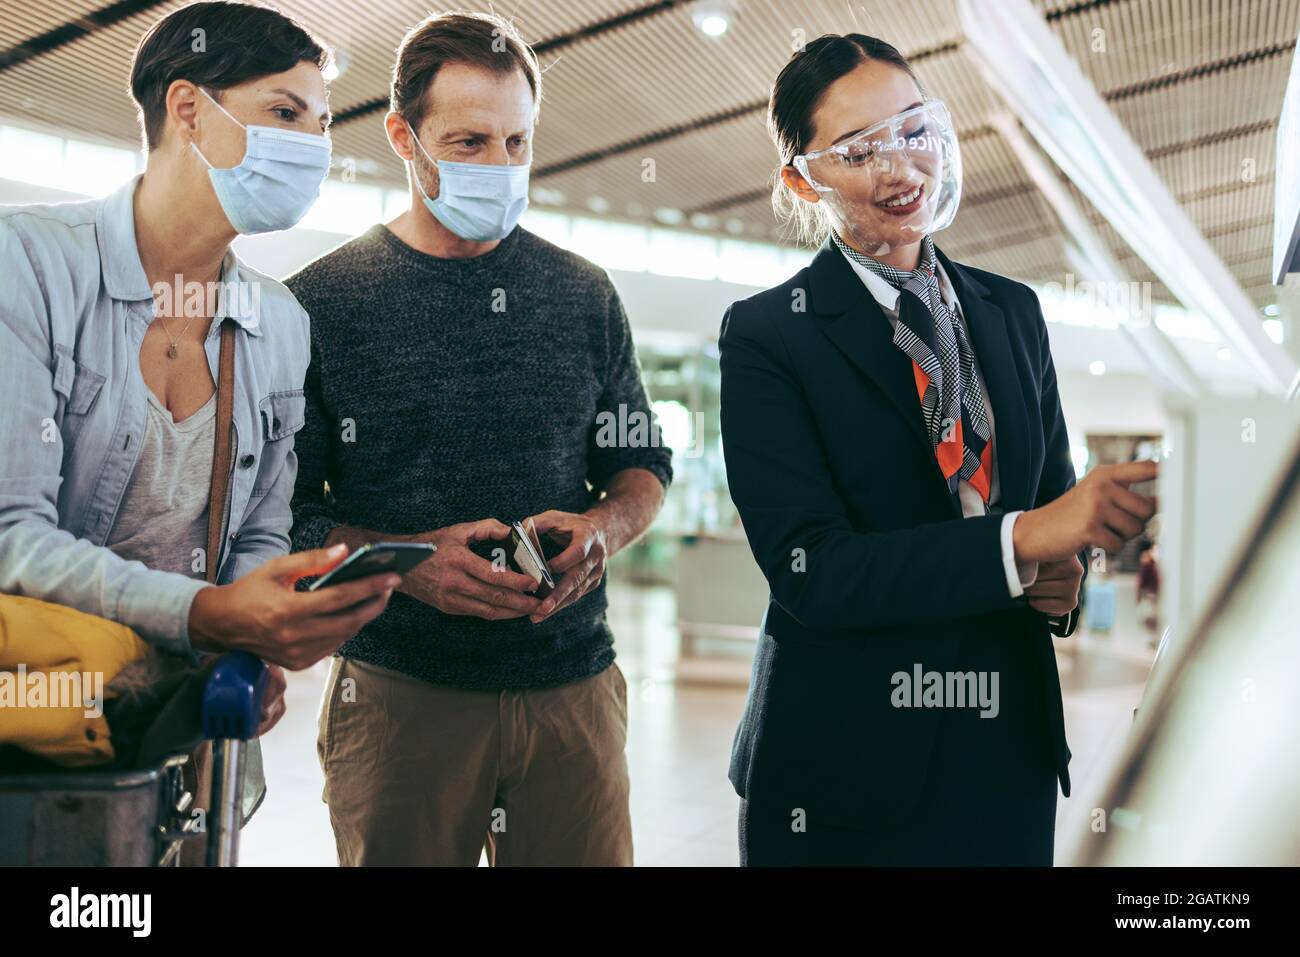 Il personale dell'aeroporto aiuta la famiglia con il check-in self-service durante la pandemia. Famiglia di passeggeri aiutata da compagnie aeree in aeroporto in pandemia. Foto Stock